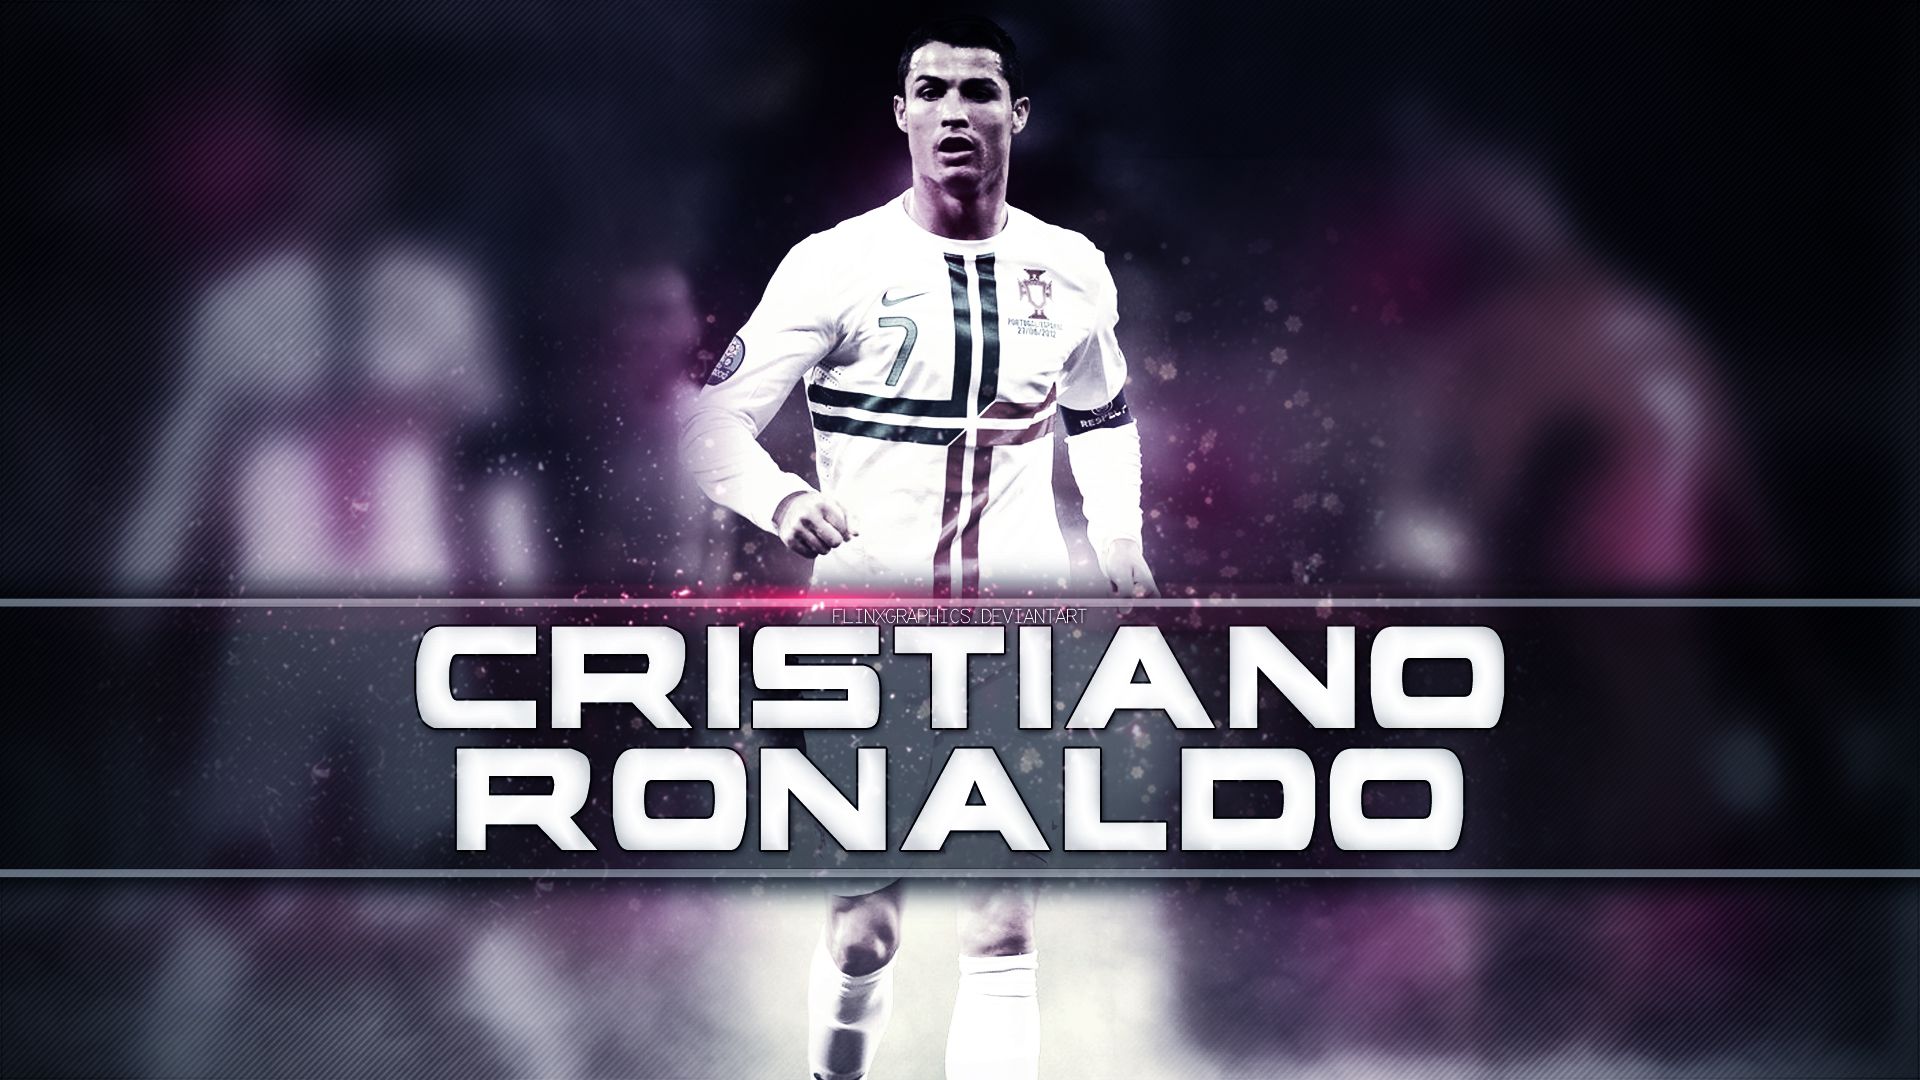 Cristiano-Ronaldo-Wallpaper-HD-2014-Portugal.jpg